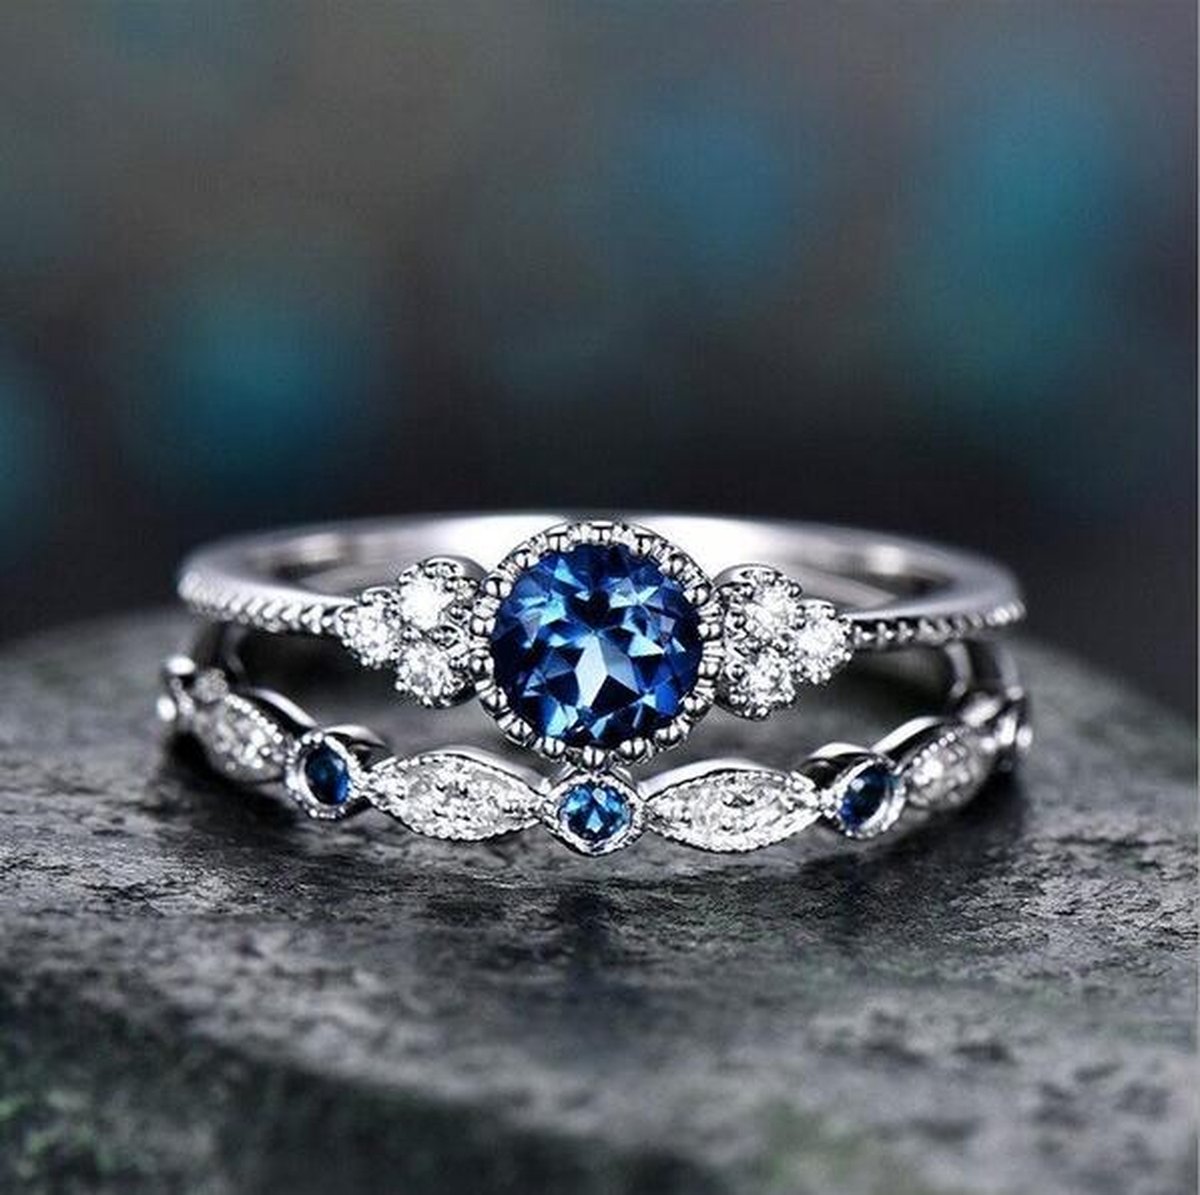 Ring blauwe steen (set) - Met edelsteen - Ring met steen dames - Ring maat 17 zilver kleurig staal - Maat 55 ring dames ringen set van 2 - Blauw